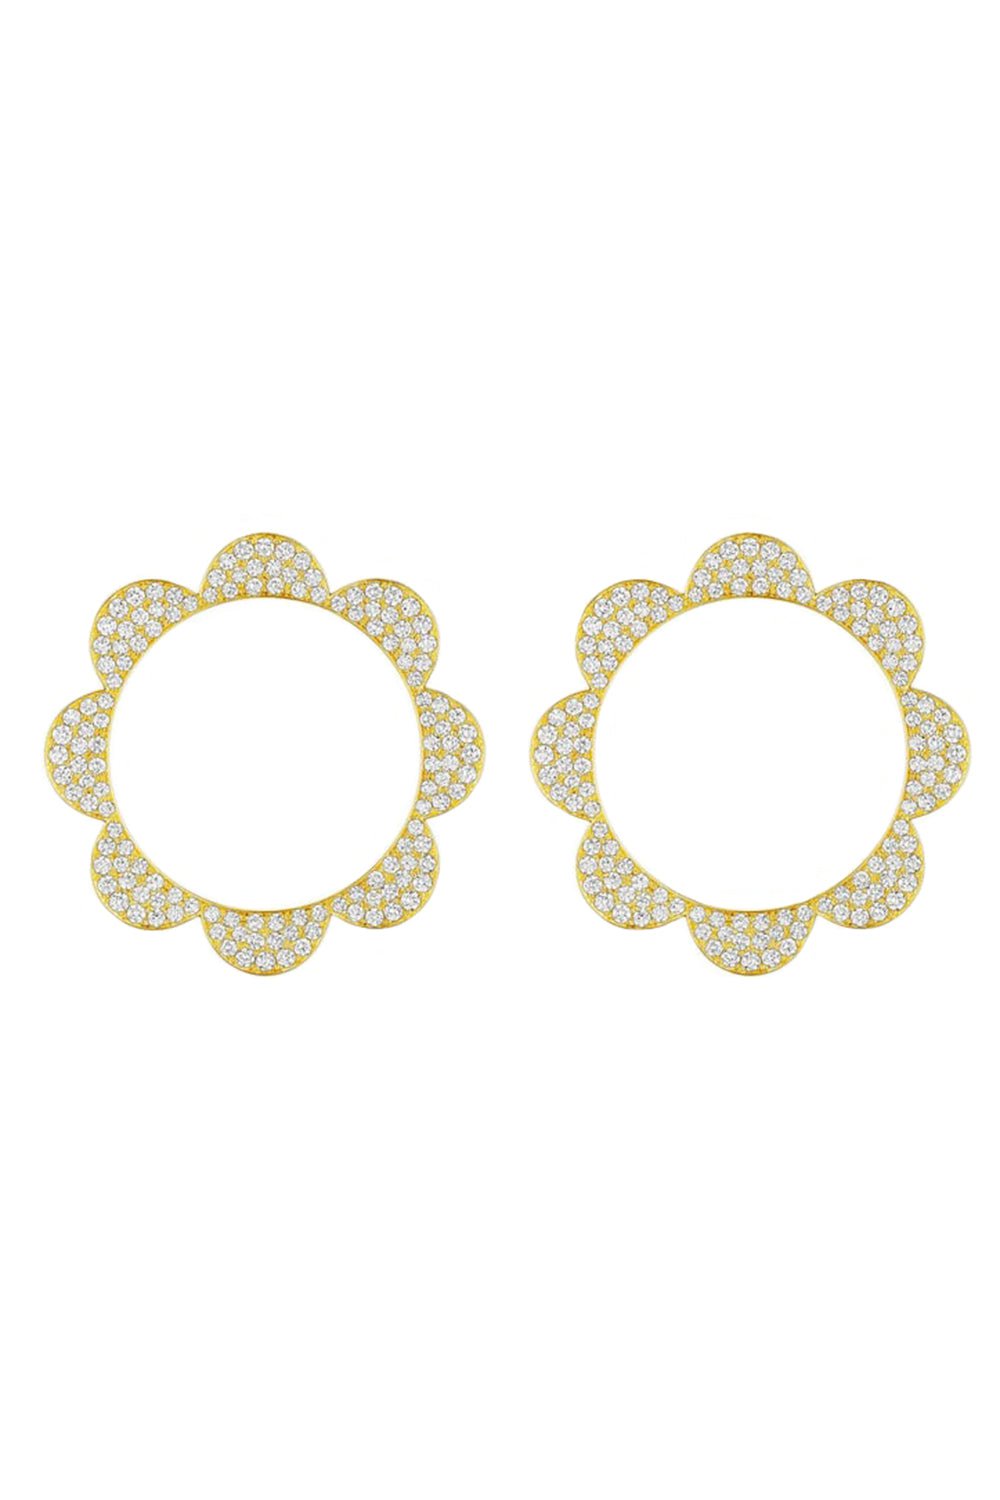 CADAR-Triplet Diamond Stud Earrings-YELLOW GOLD